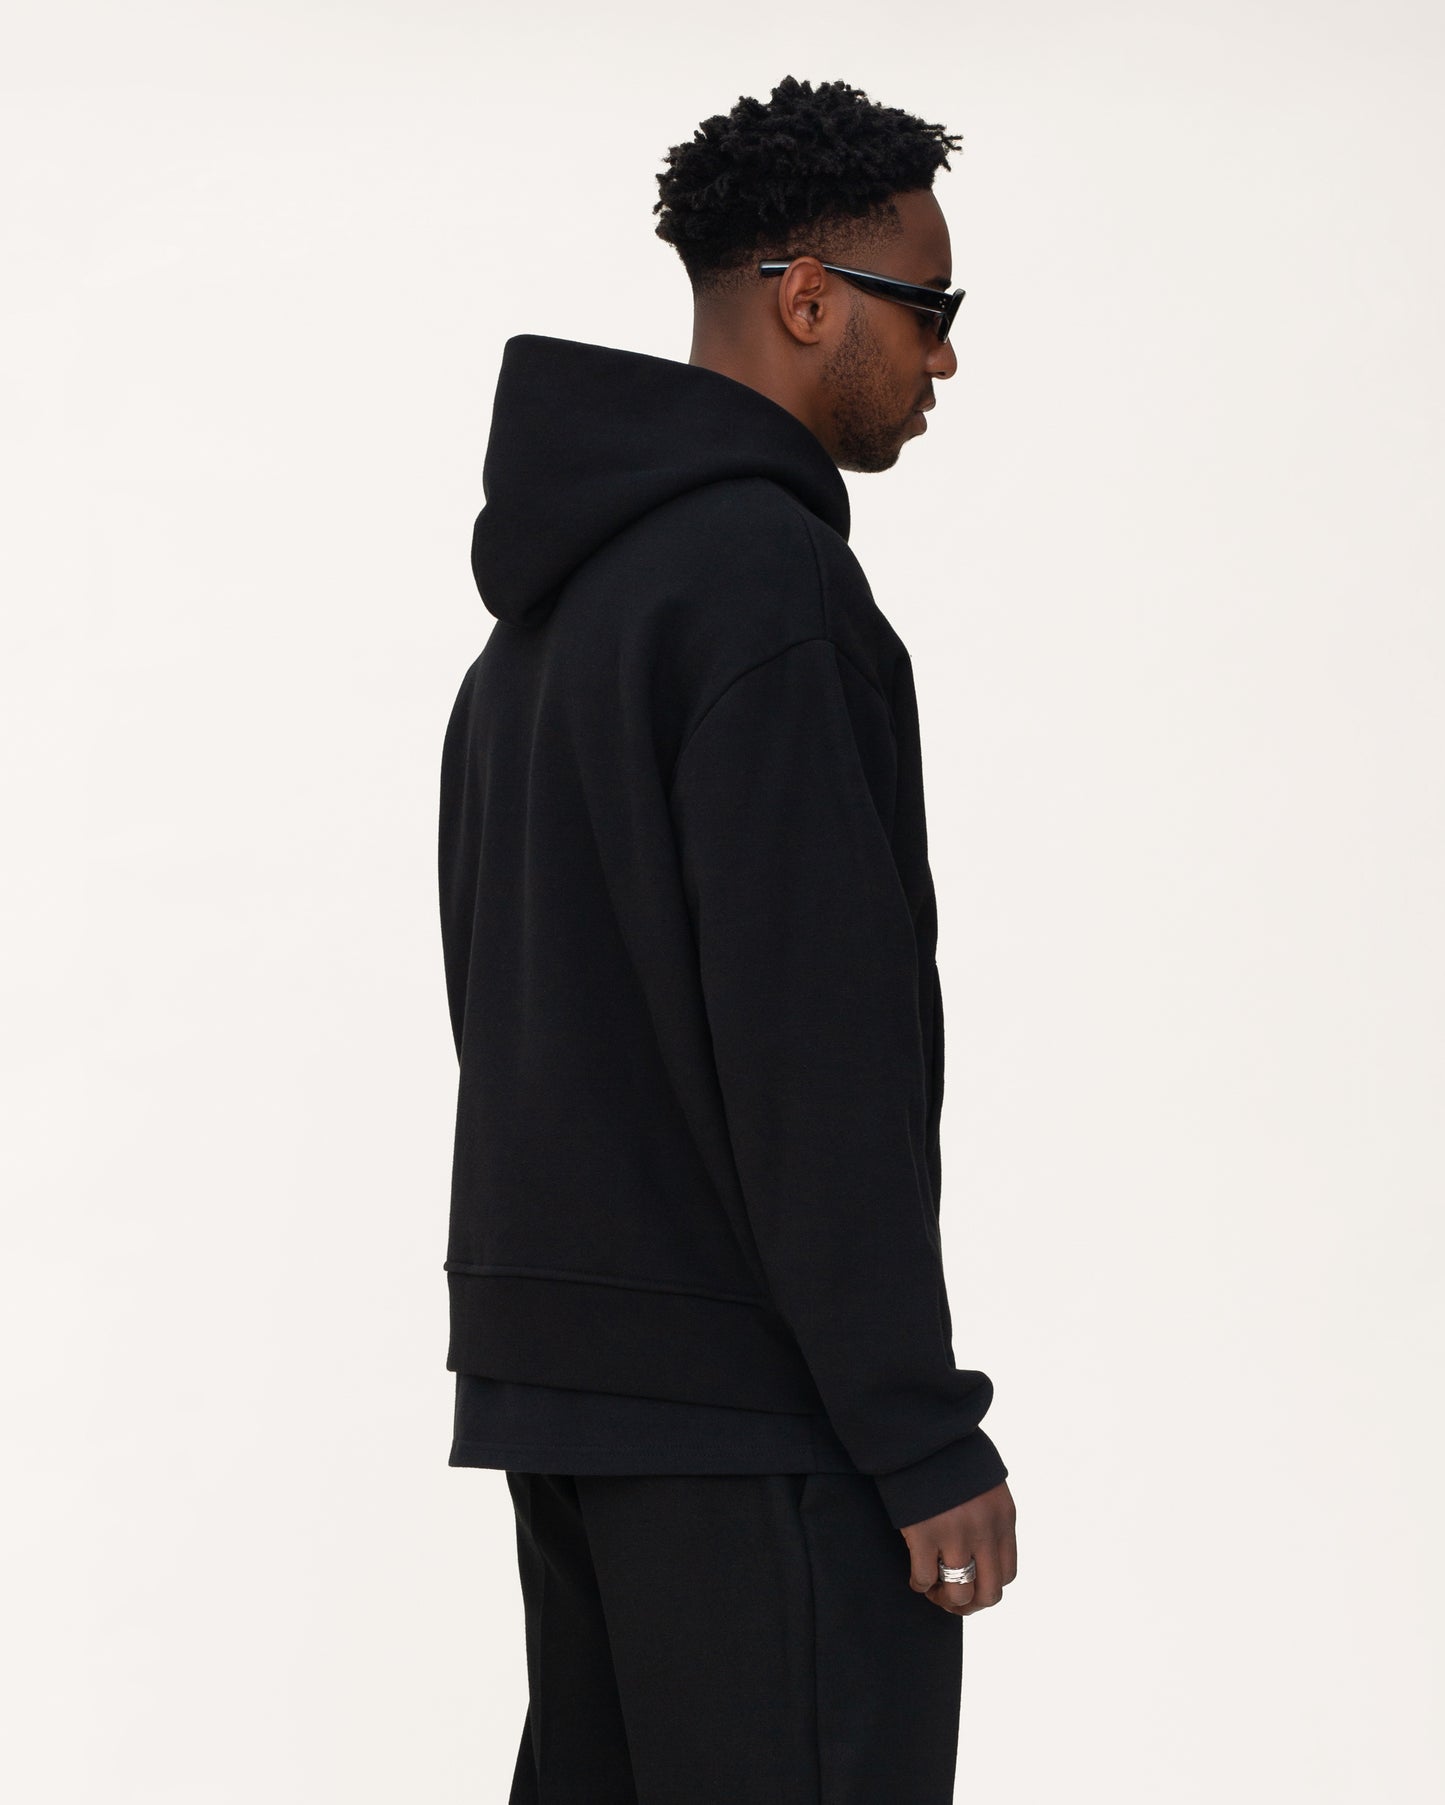 zip up hoodies, black hoodie, mens hoodie, side view